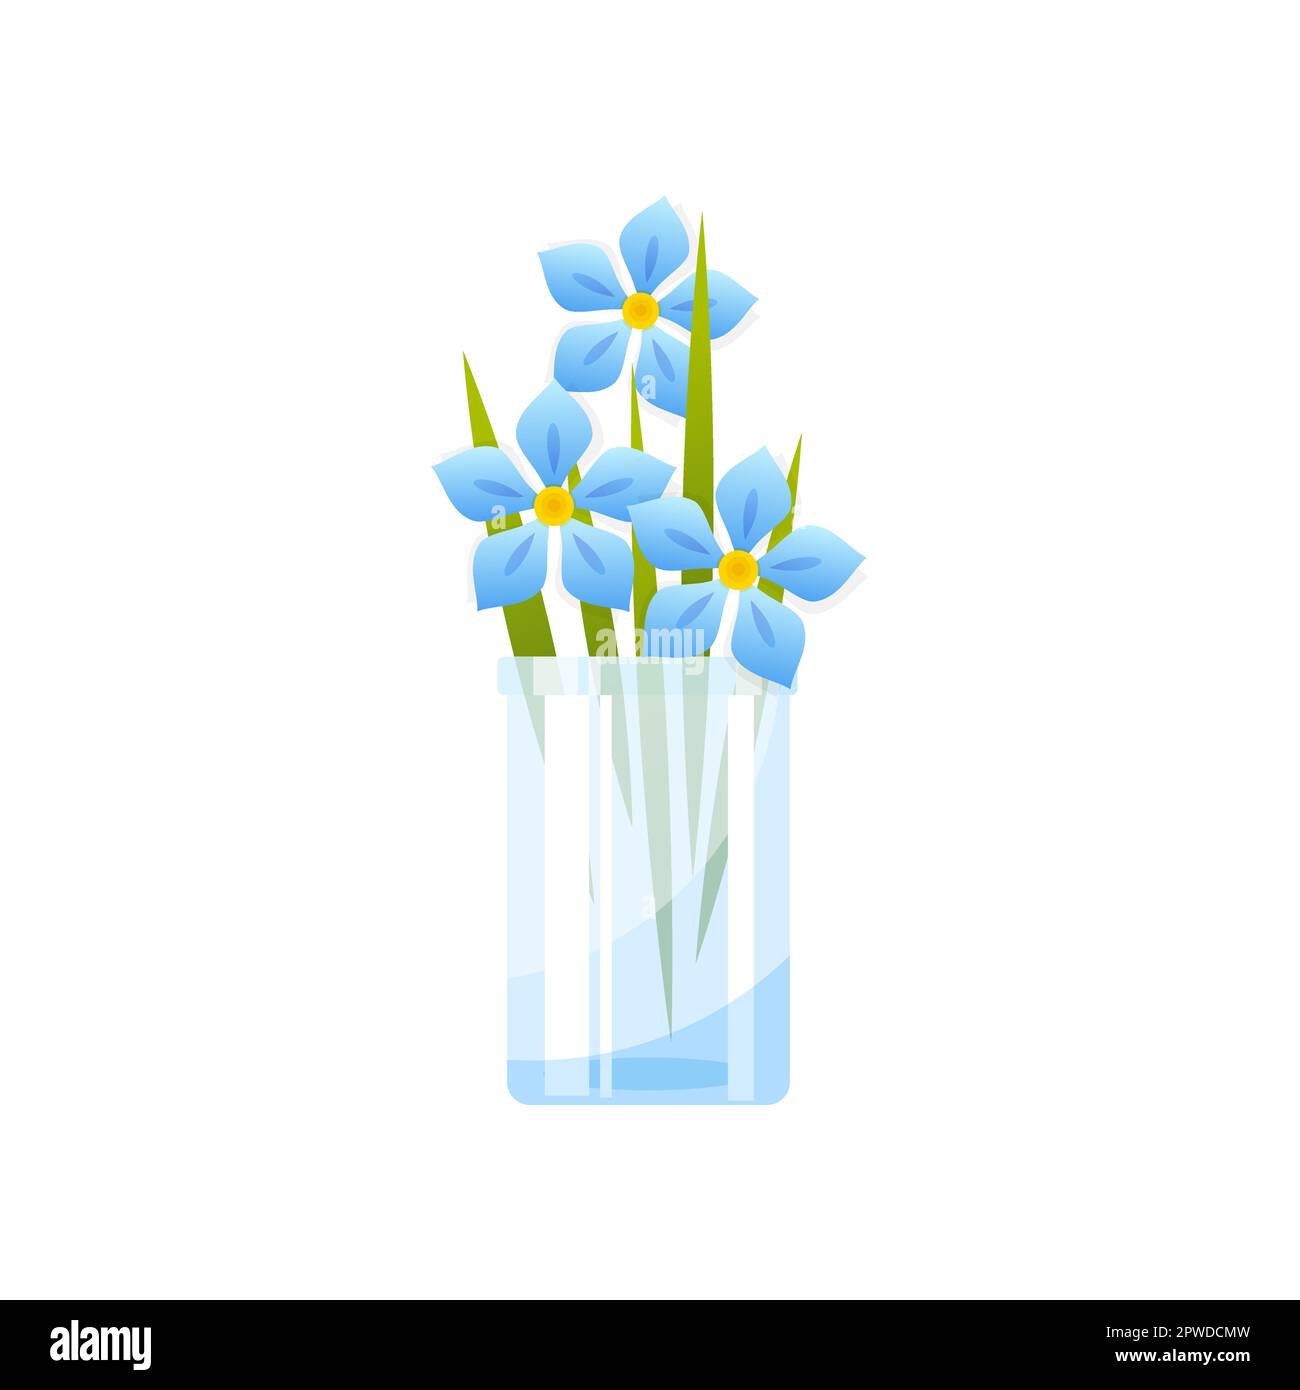 Light blue flowers in glass vase vector illustration Stock Vector Image ...